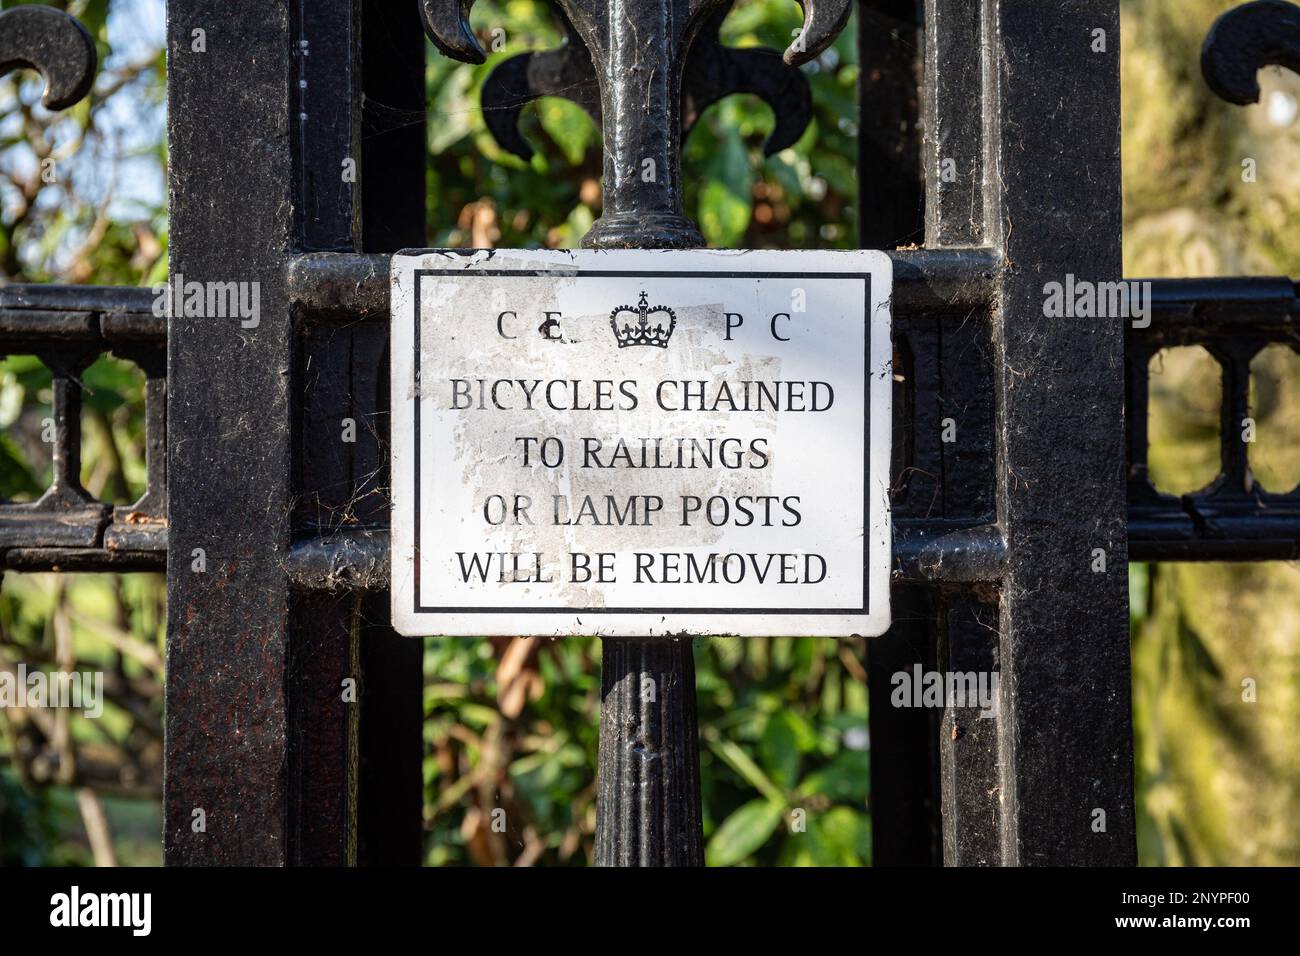 Les bicyclettes chaînées à des rails ou à des poteaux de feux seront retirées. Panneau sur la clôture du parc privé de Park Square à Londres, Angleterre. Banque D'Images